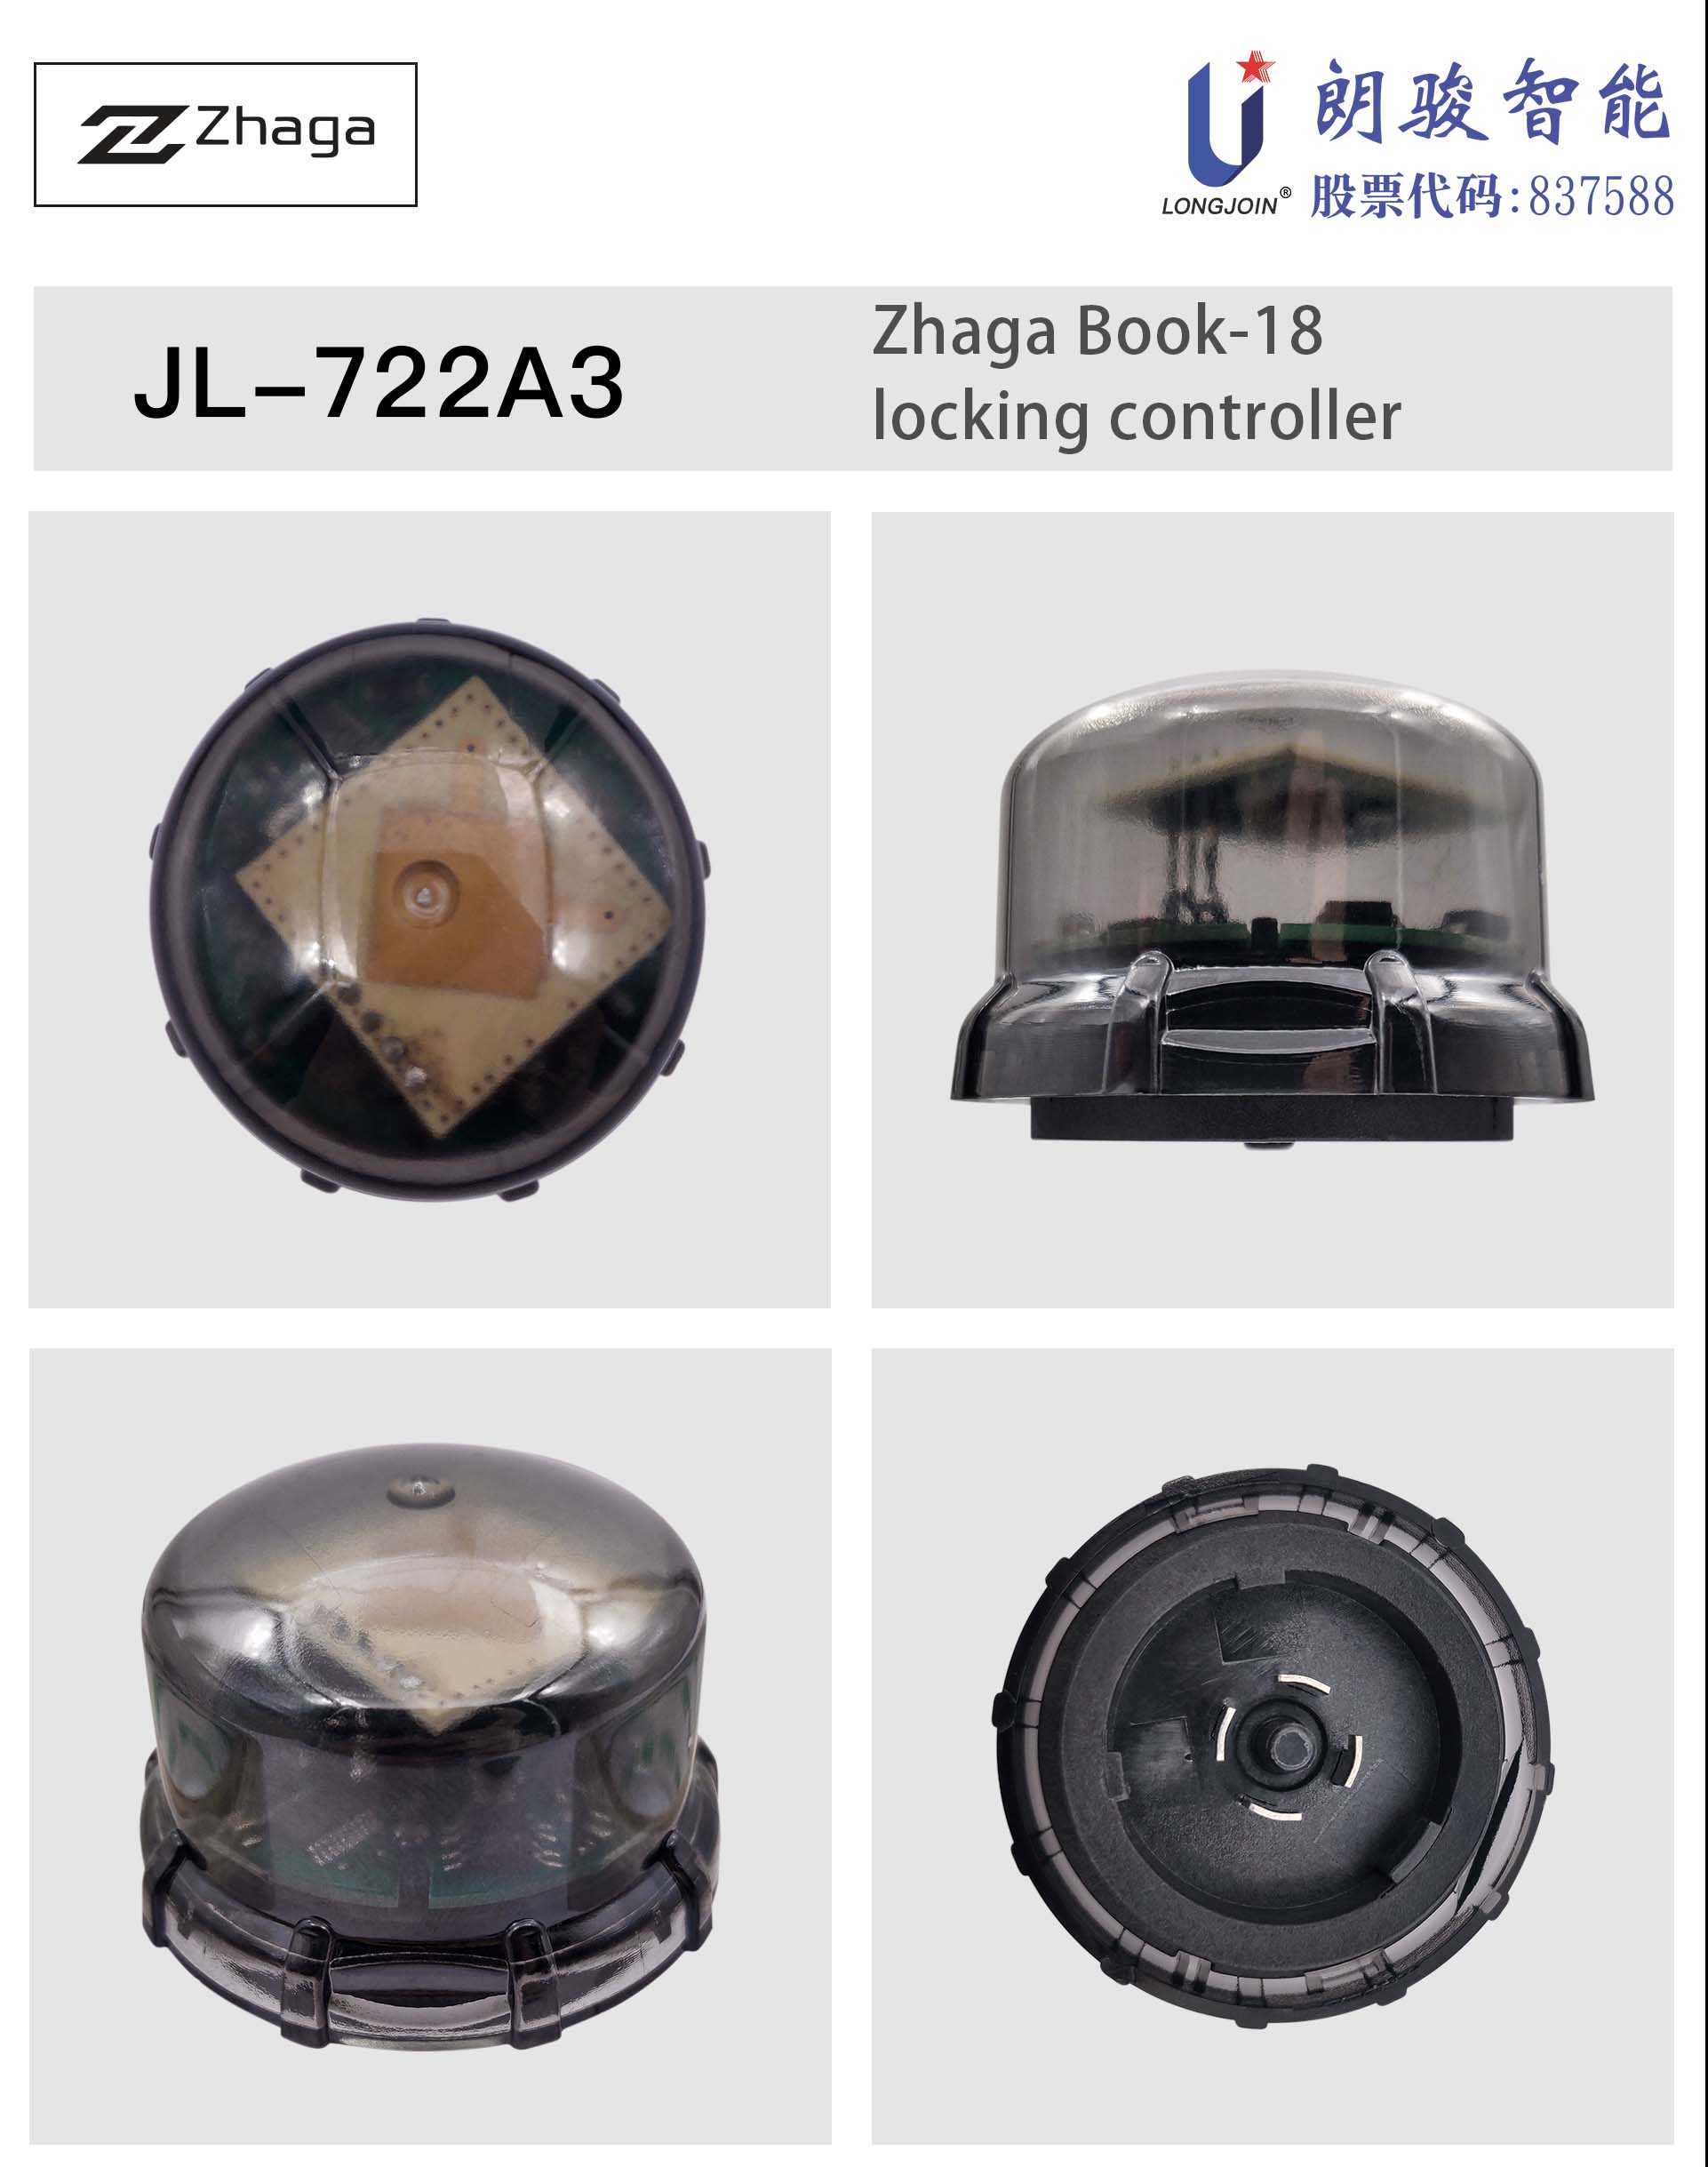 英文版1-JL-722A3 产品图.jpg